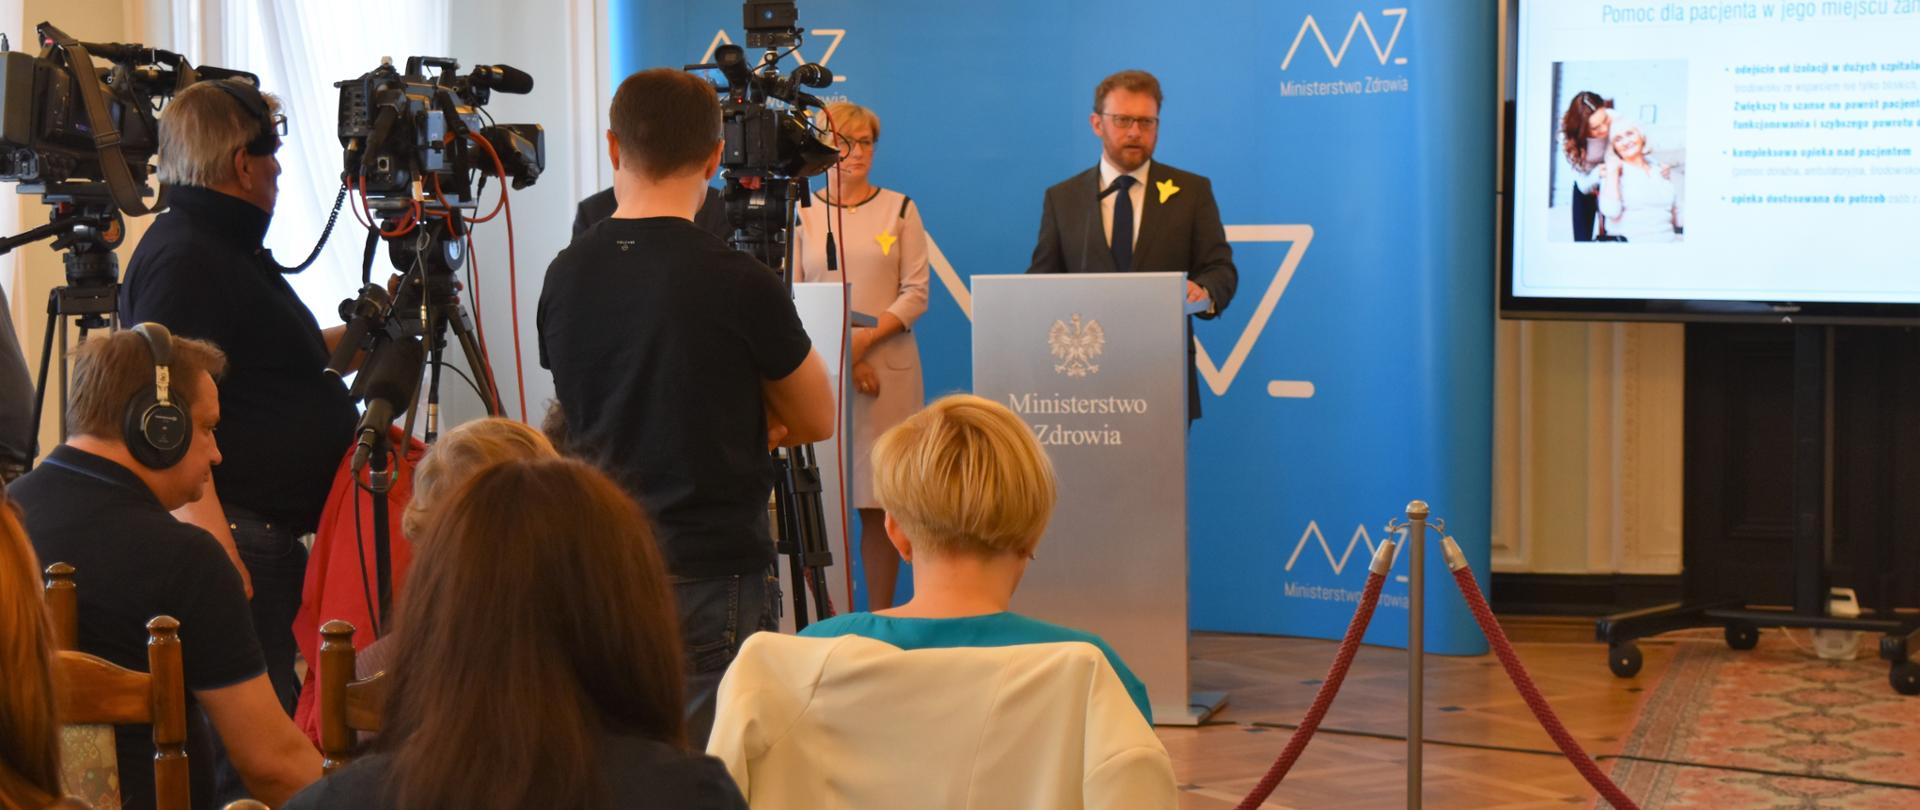 W konferencji prasowej udział wzięli minister zdrowia Łukasz Szumowski, sekretarz stanu Józefa Szczurek-Żelazko oraz podsekretarz stanu Zbigniew J. Król.